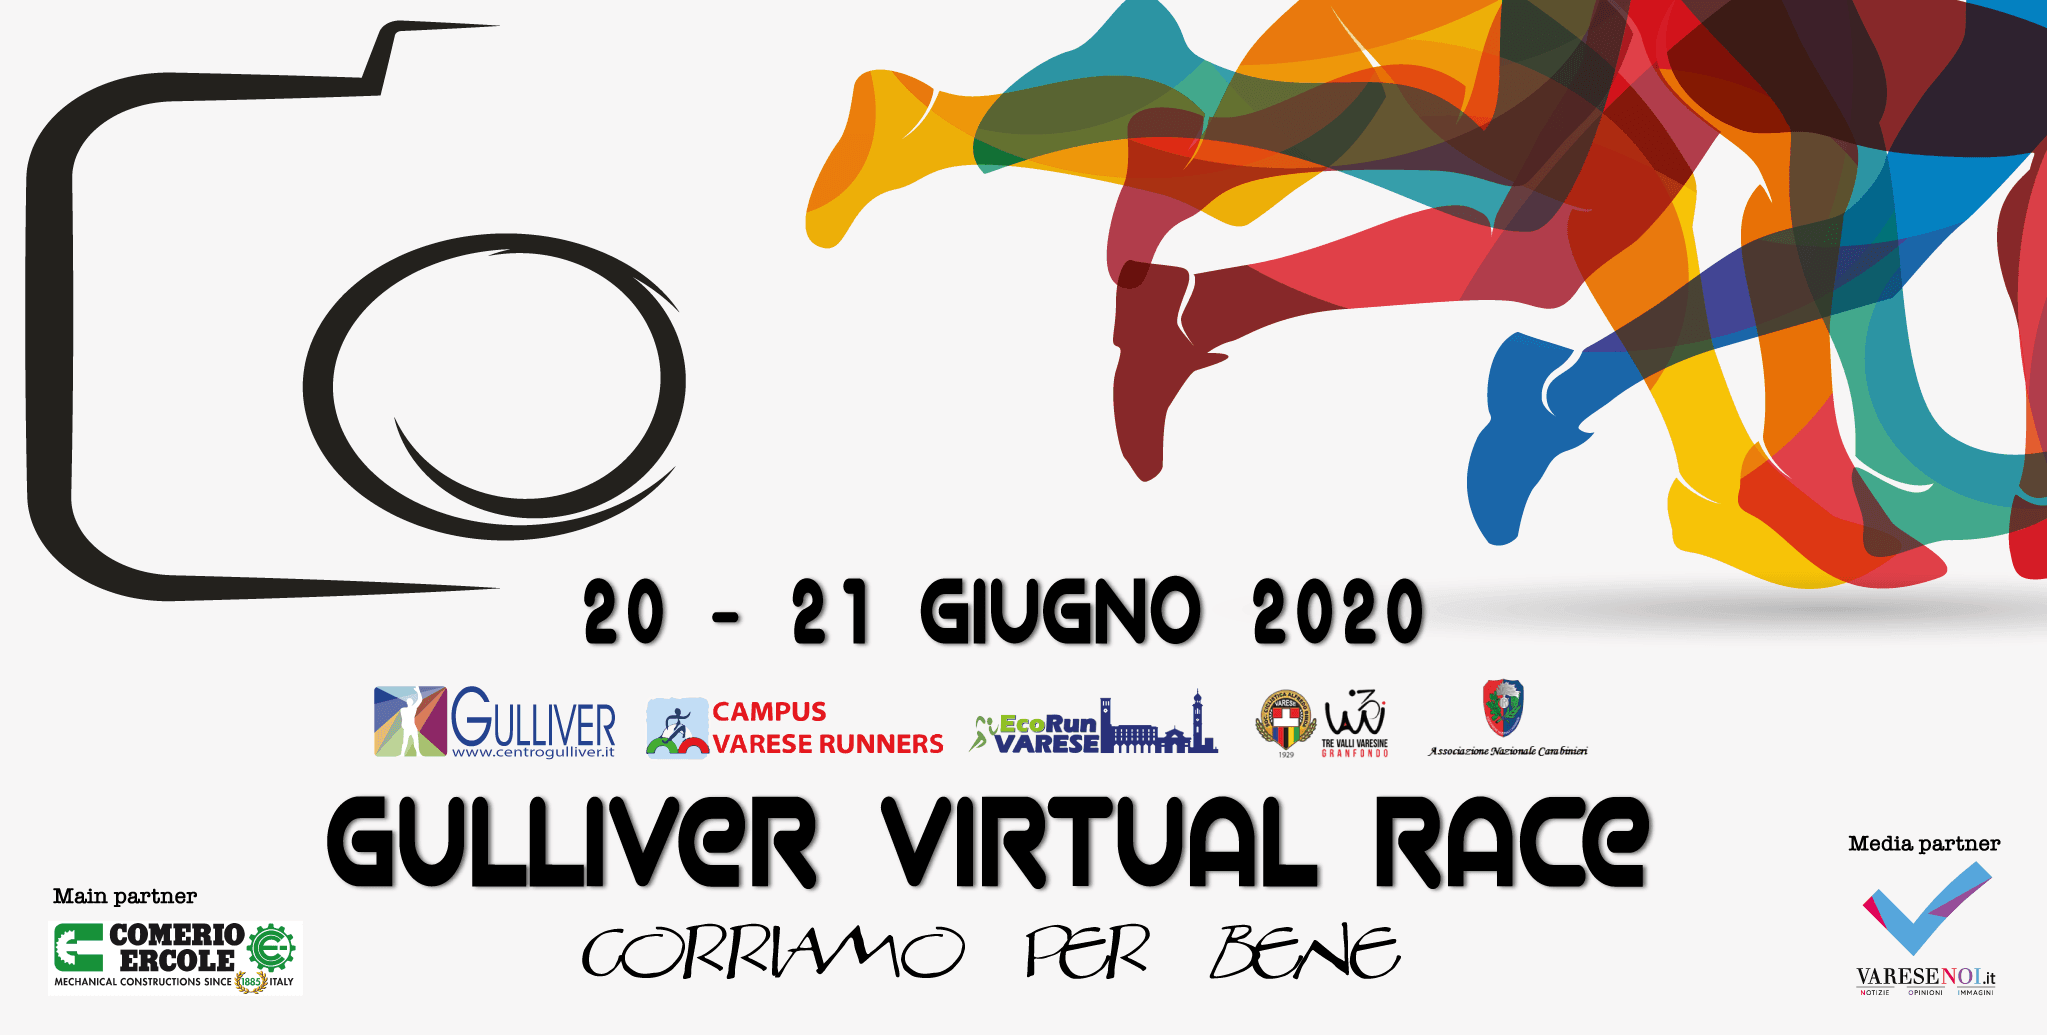 Lanciata ufficialmente la Gulliver Virtual Race – Corriamo per bene,